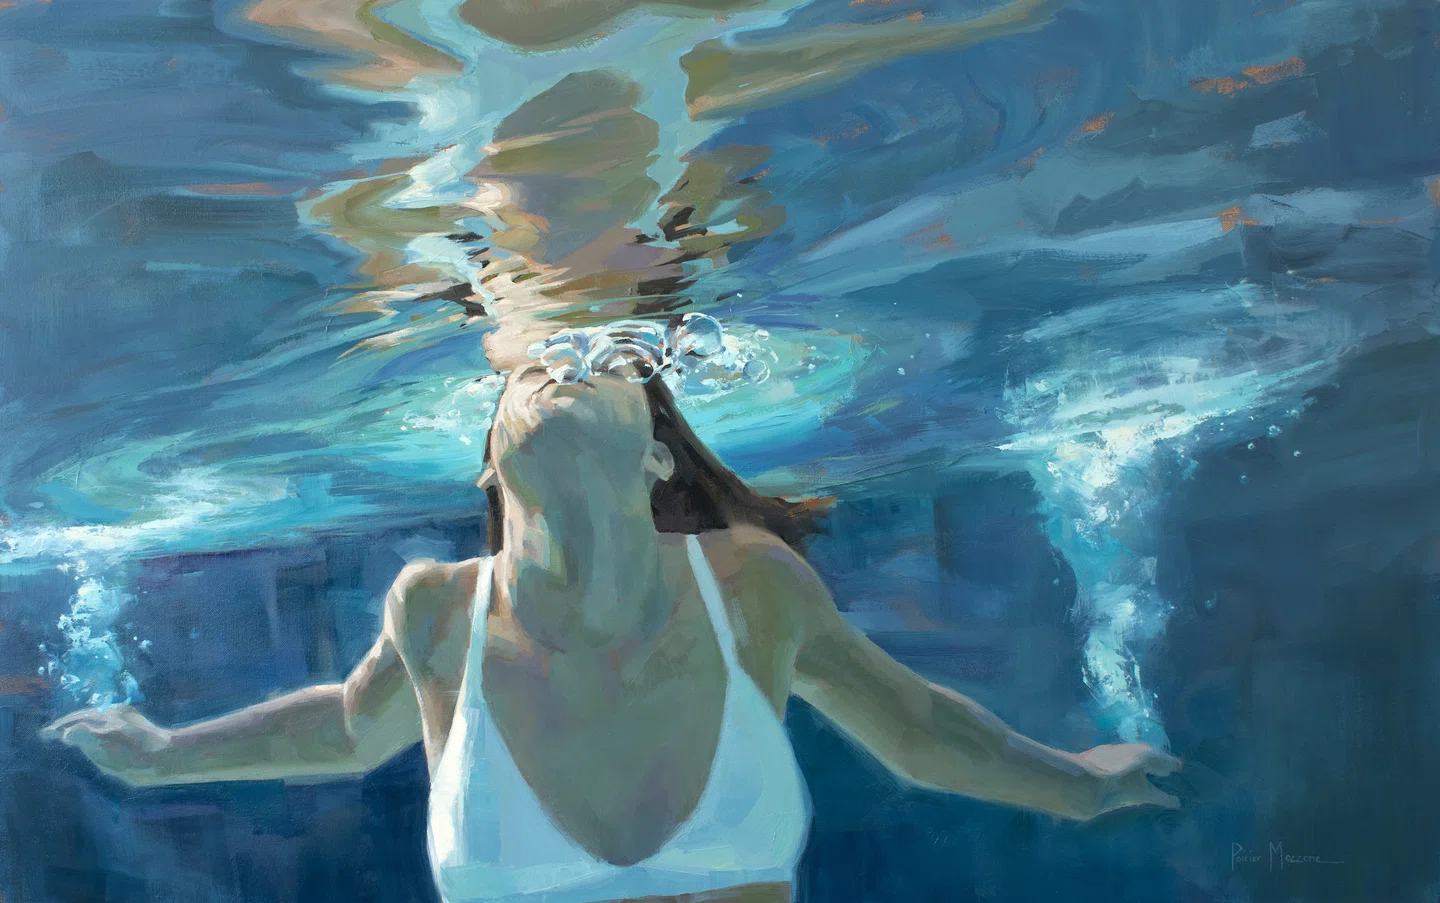 Reviva as memórias do verão através das pinturas de água de Michele Poirier Mozzone